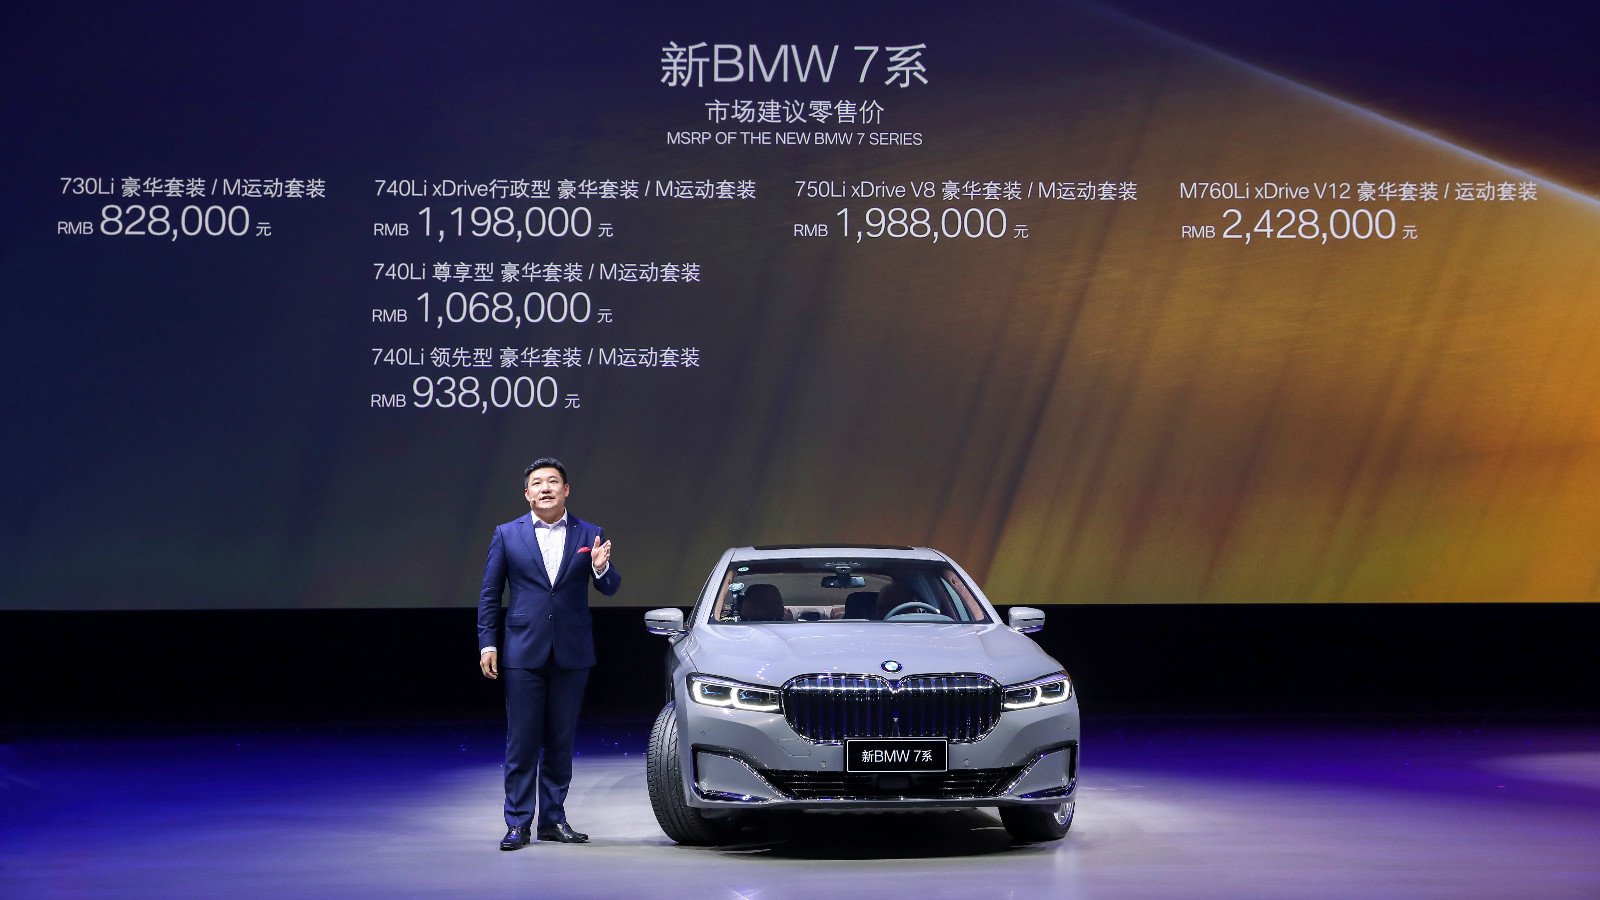 宝马集团强势推进大型豪华车产品攻势 新BMW 7系荣耀上市 携创新科技开辟豪华新境